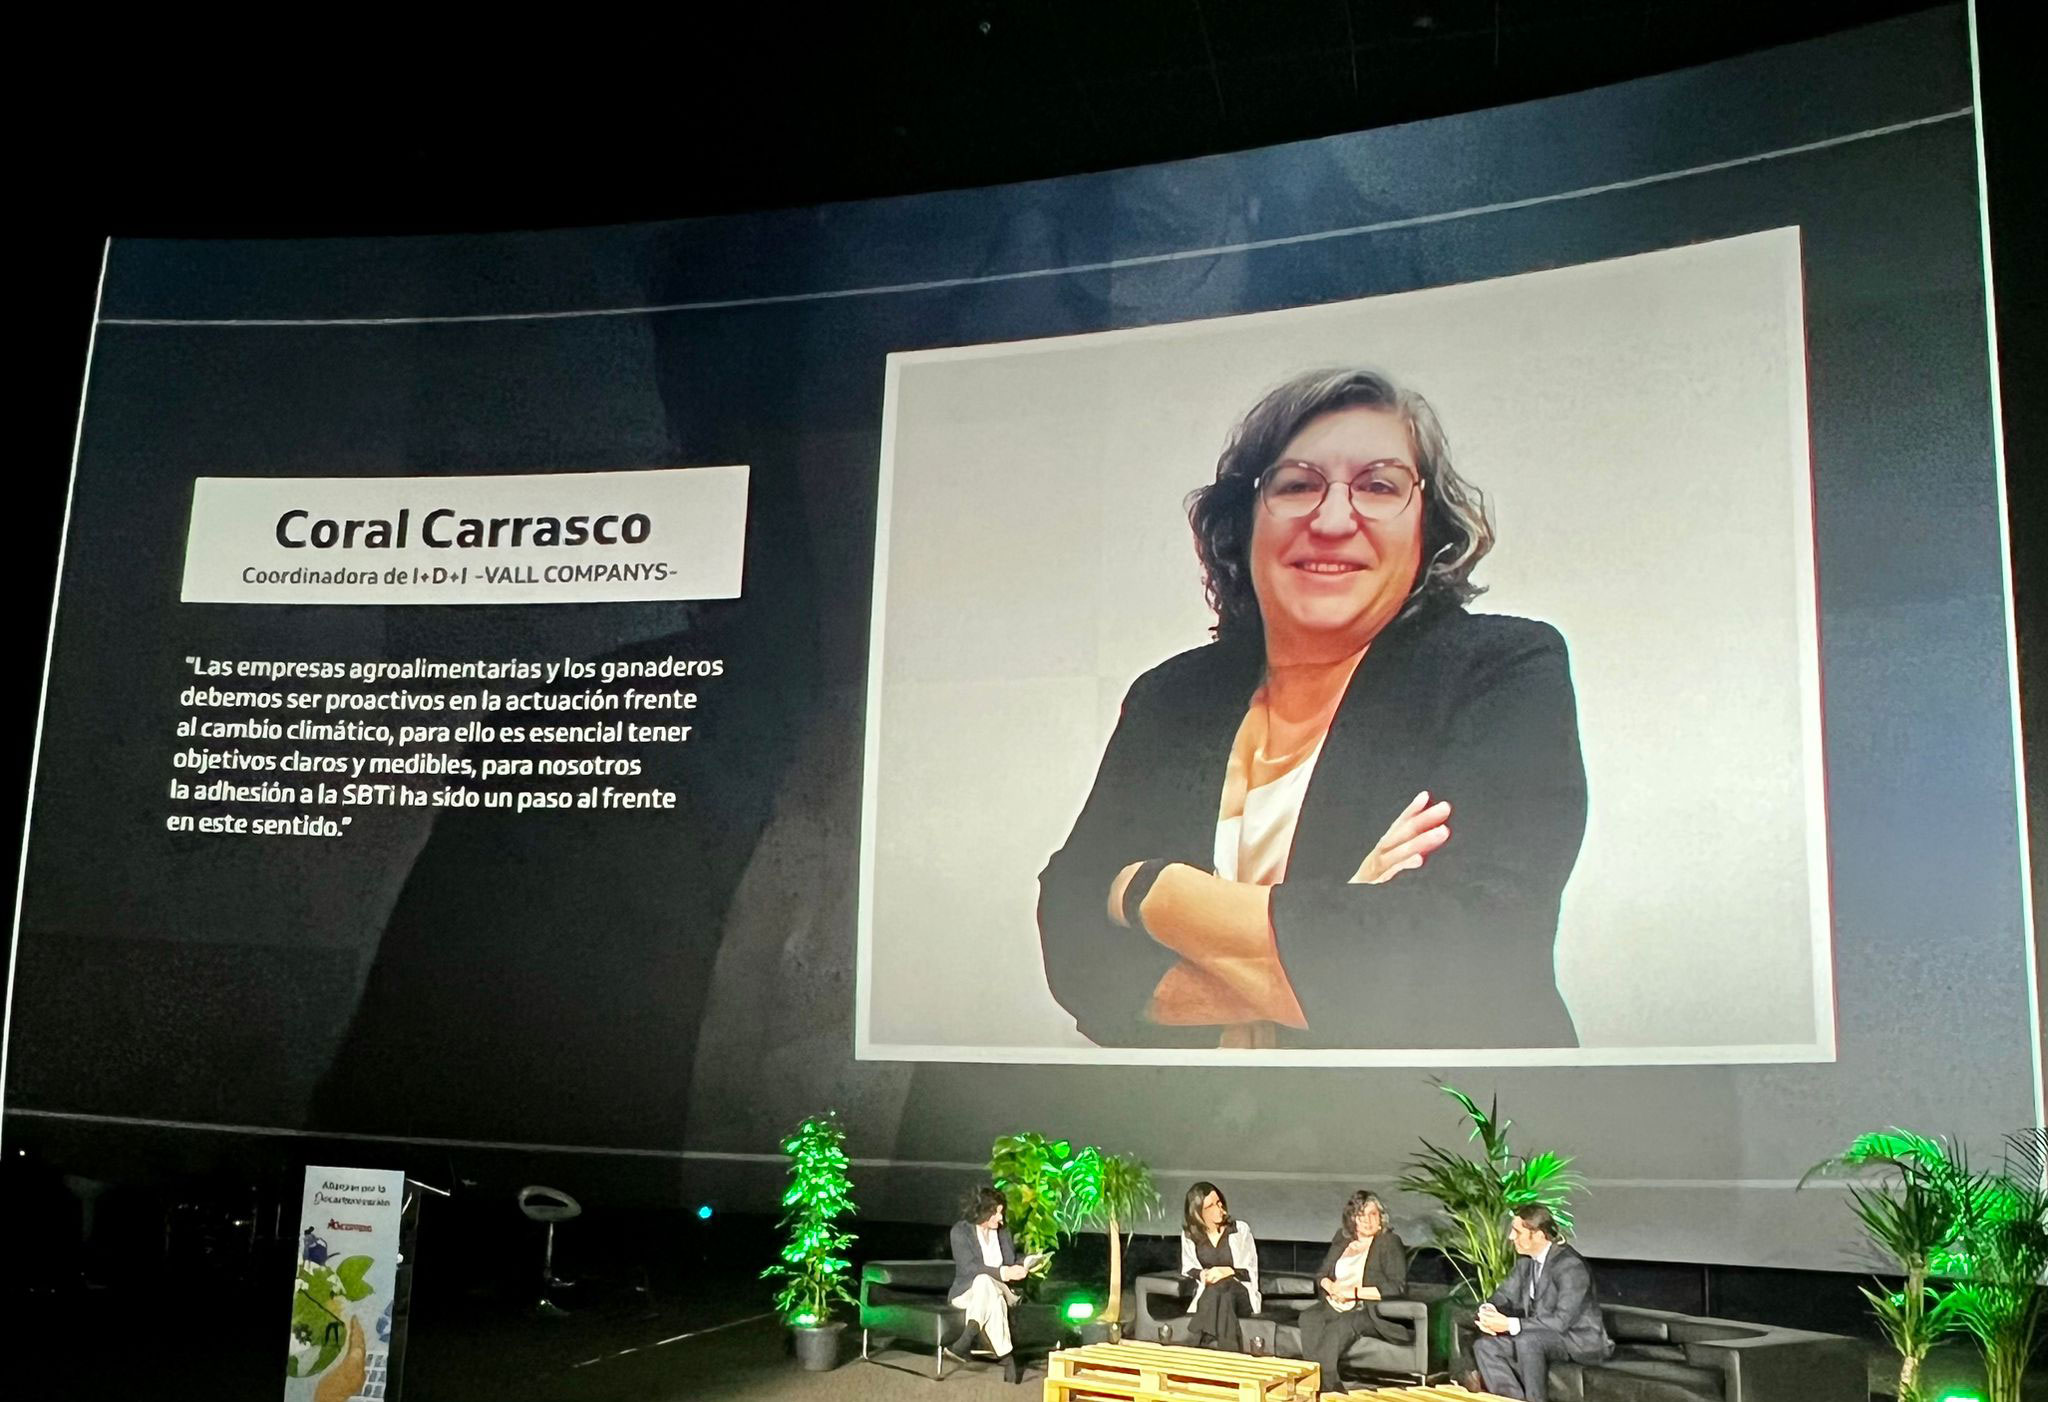 Coral Carrasco participa en el evento “Alianzas por la Descarbonización” de Alcampo